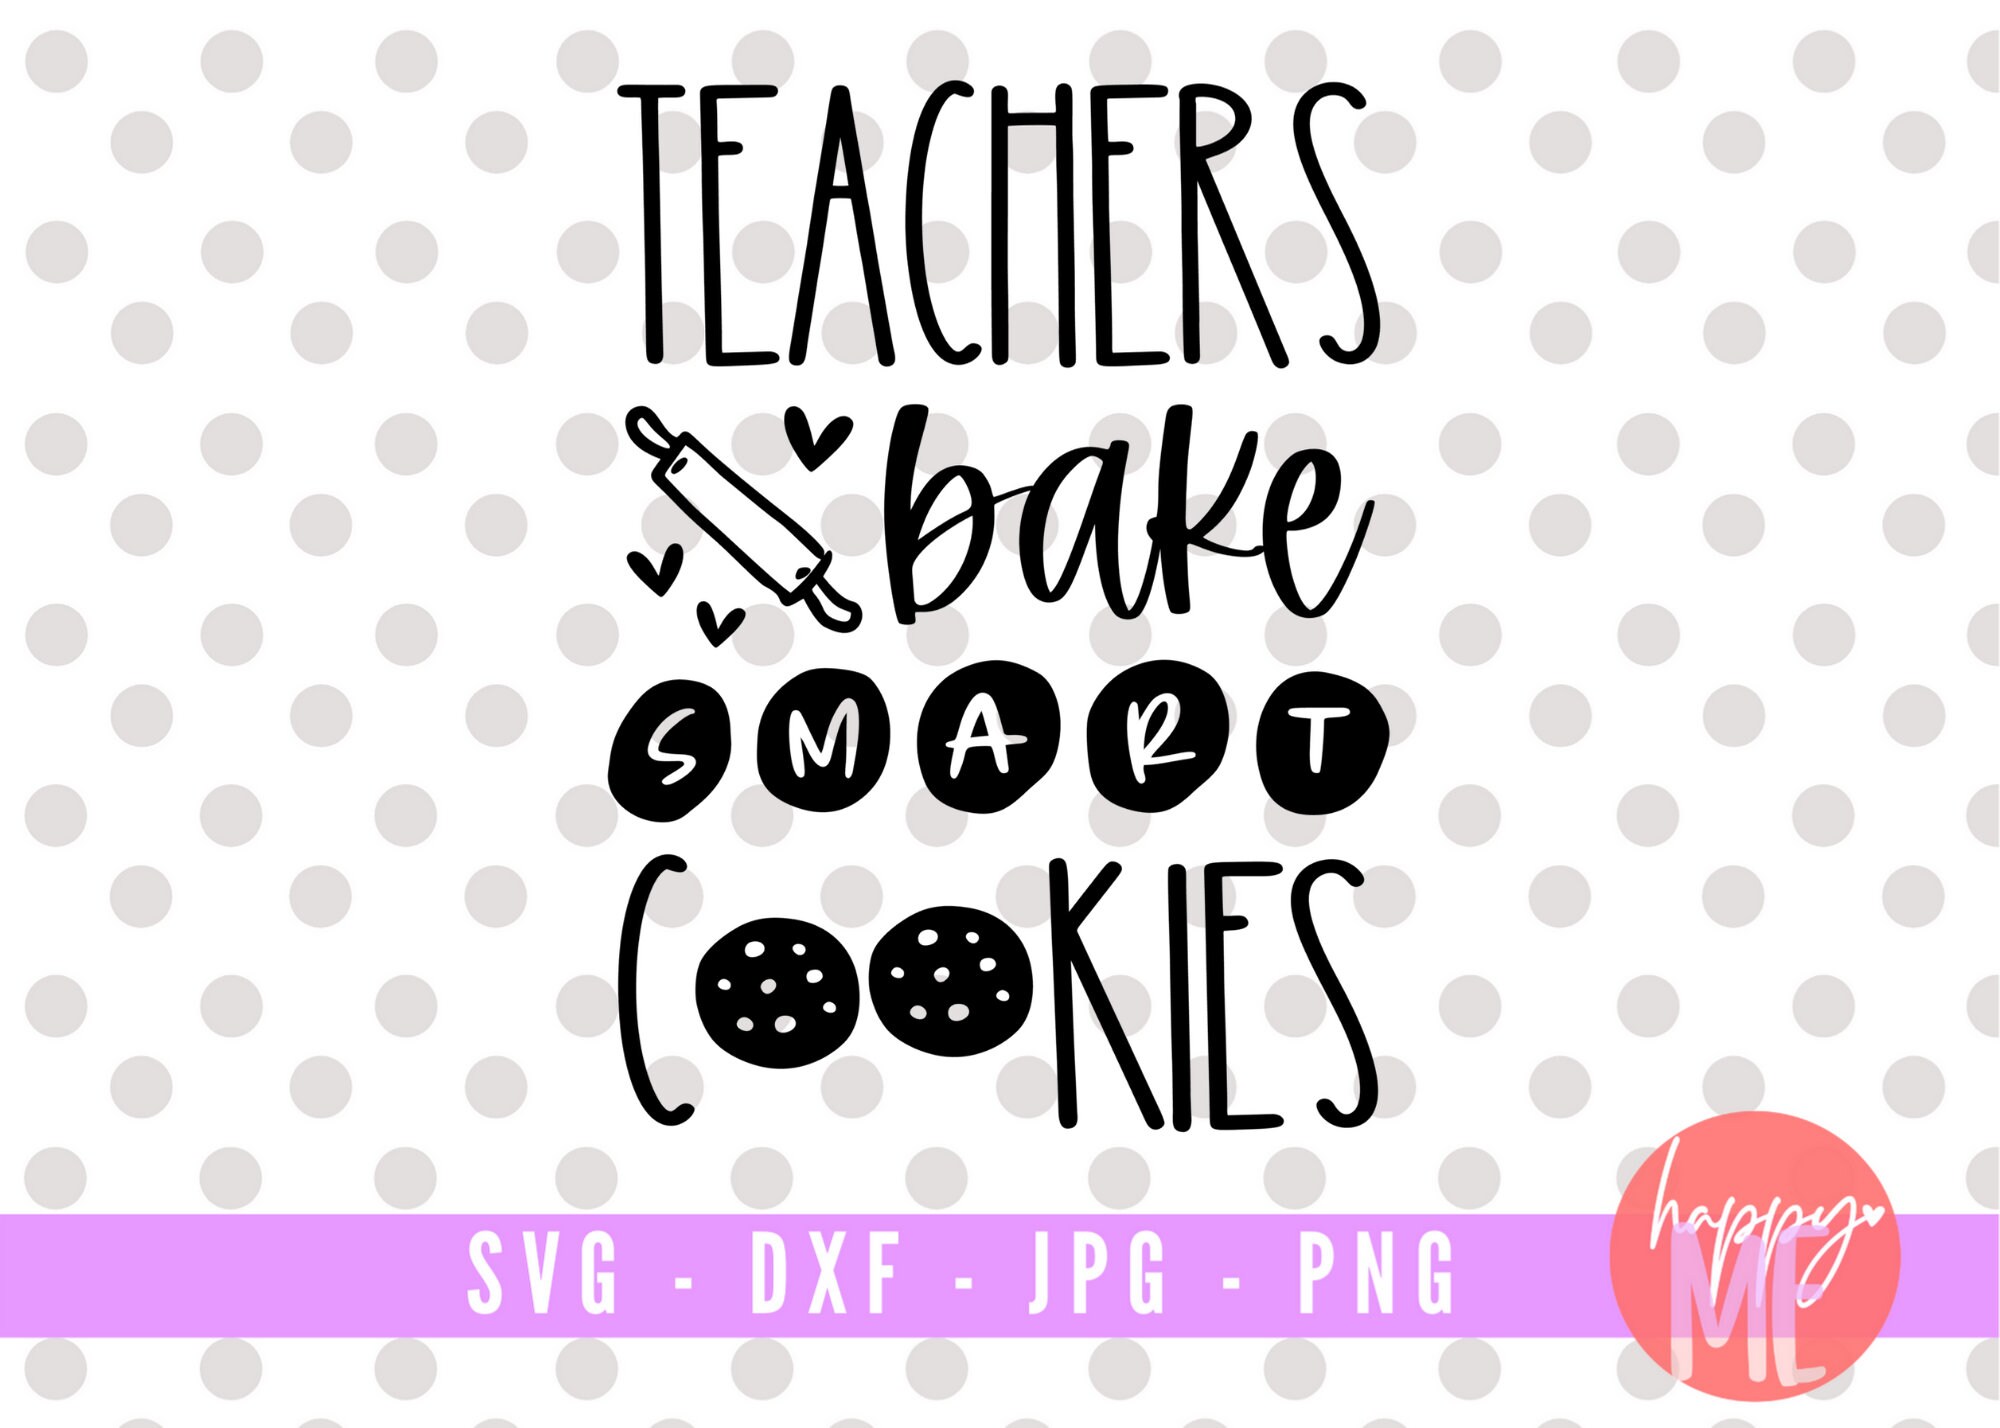 Thanks for Making Me One Smart Cookie SVG Teacher Gift SVG -  Denmark